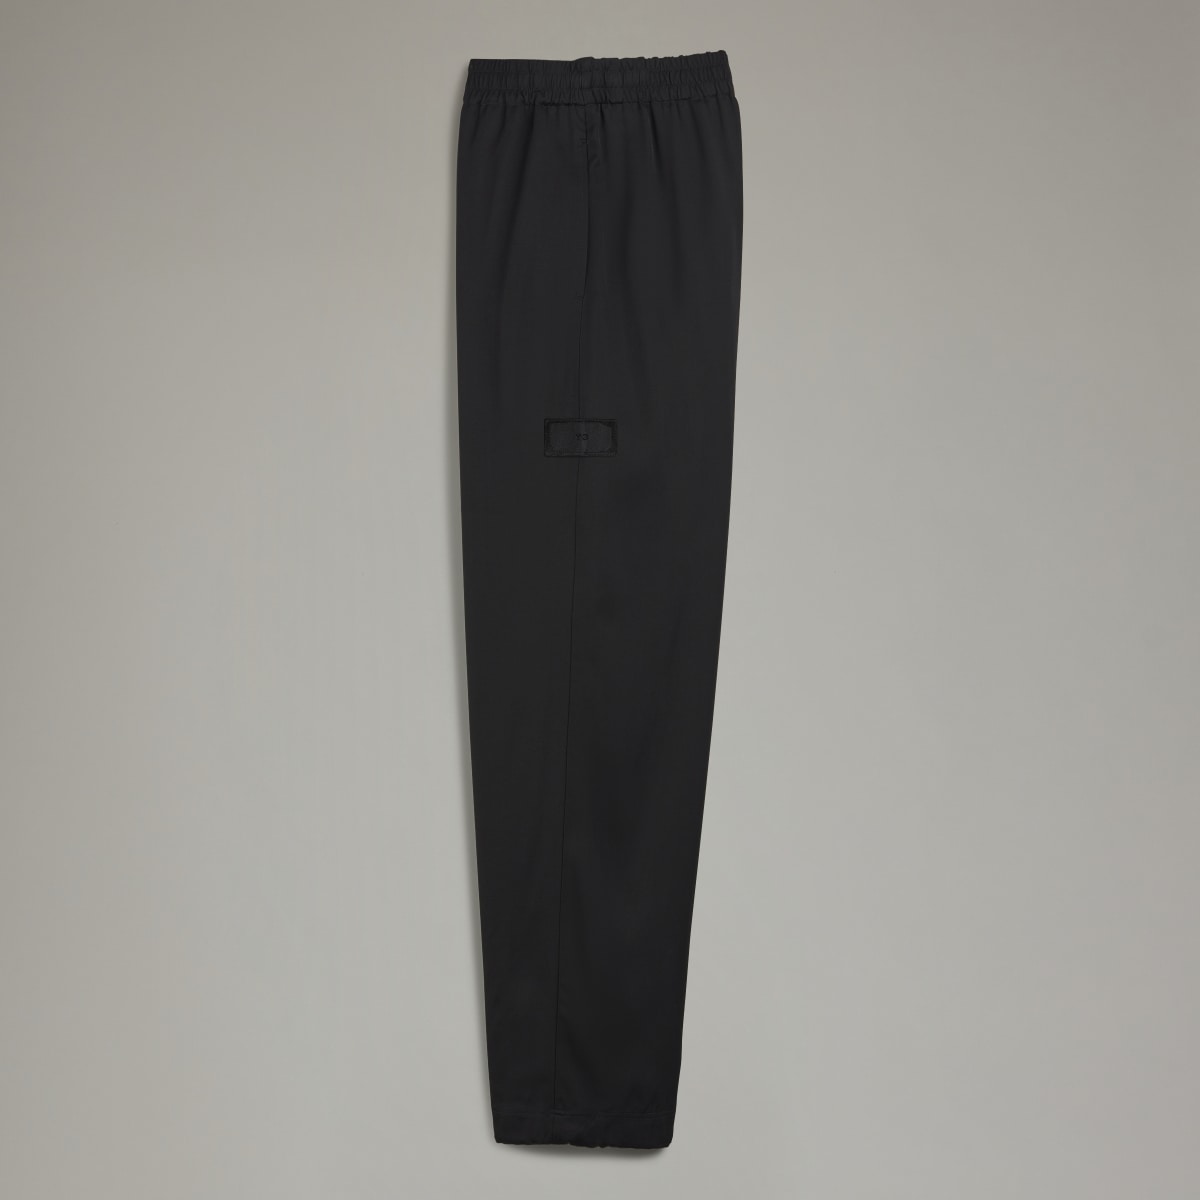 Adidas Y-3 Elegant Cuffed Pants. 5